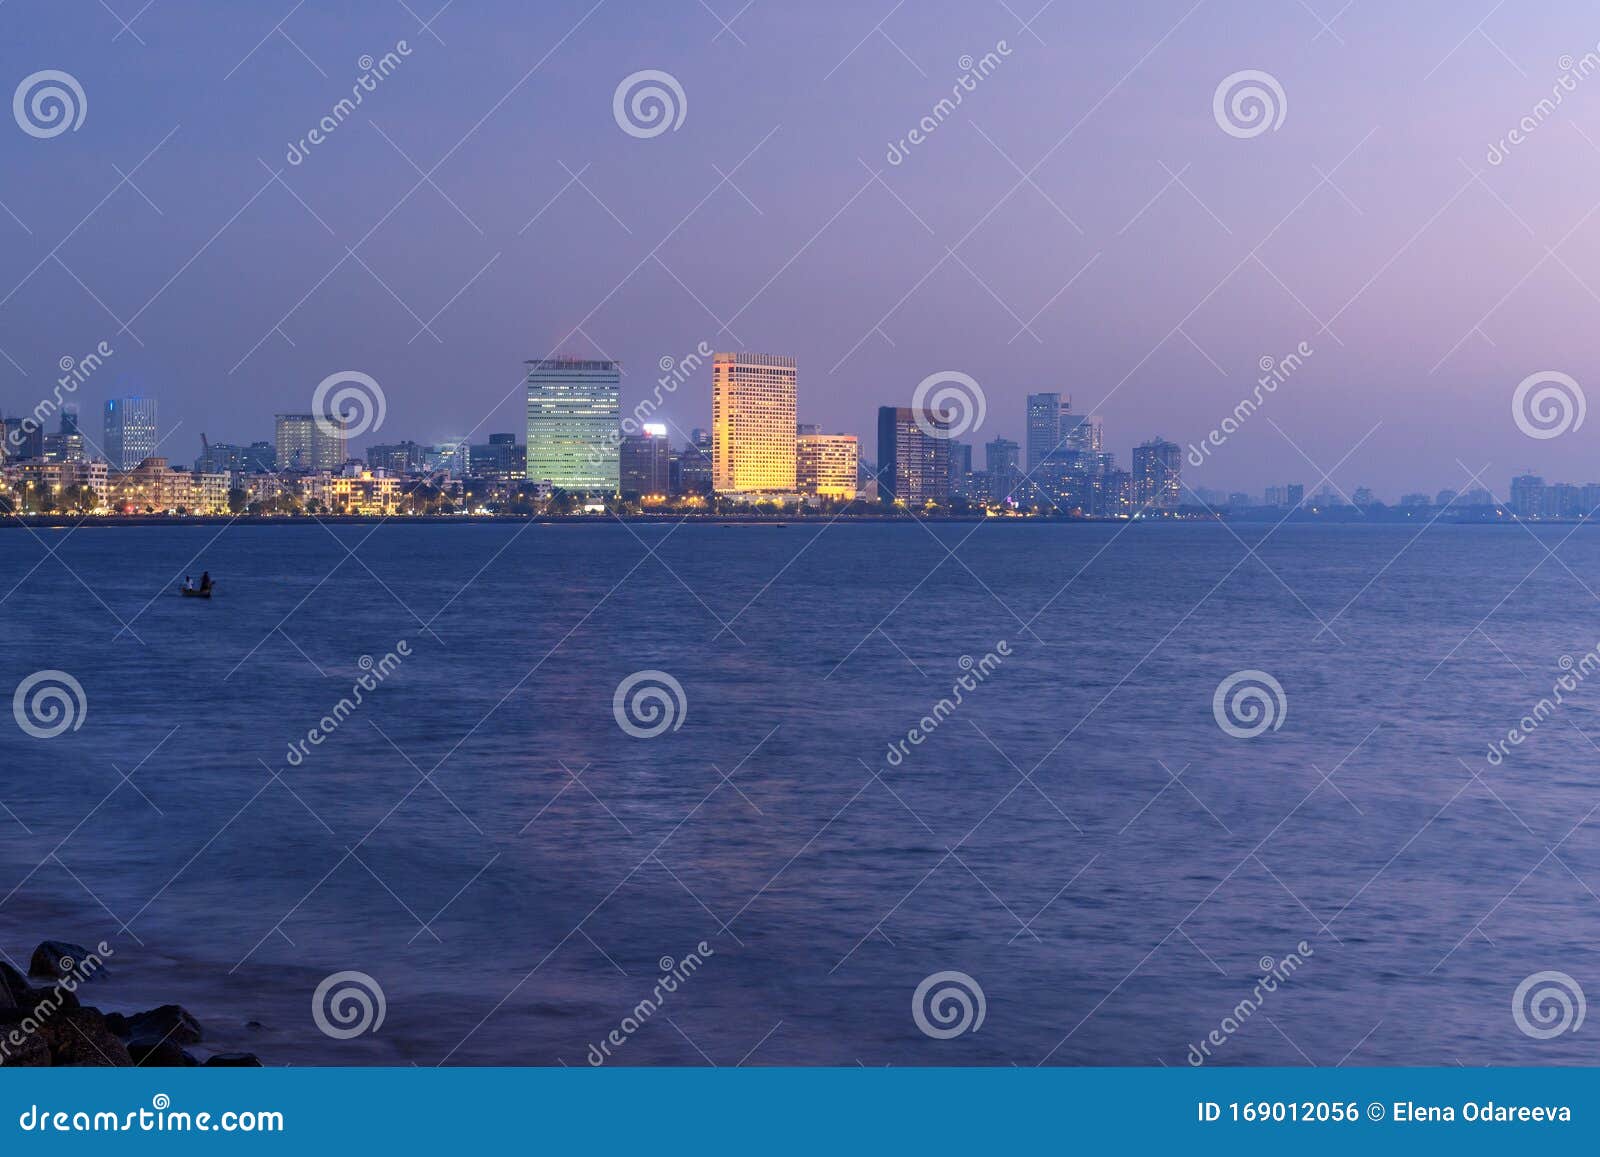 view of waterfront from chowpatty beach at night. mumbai. india